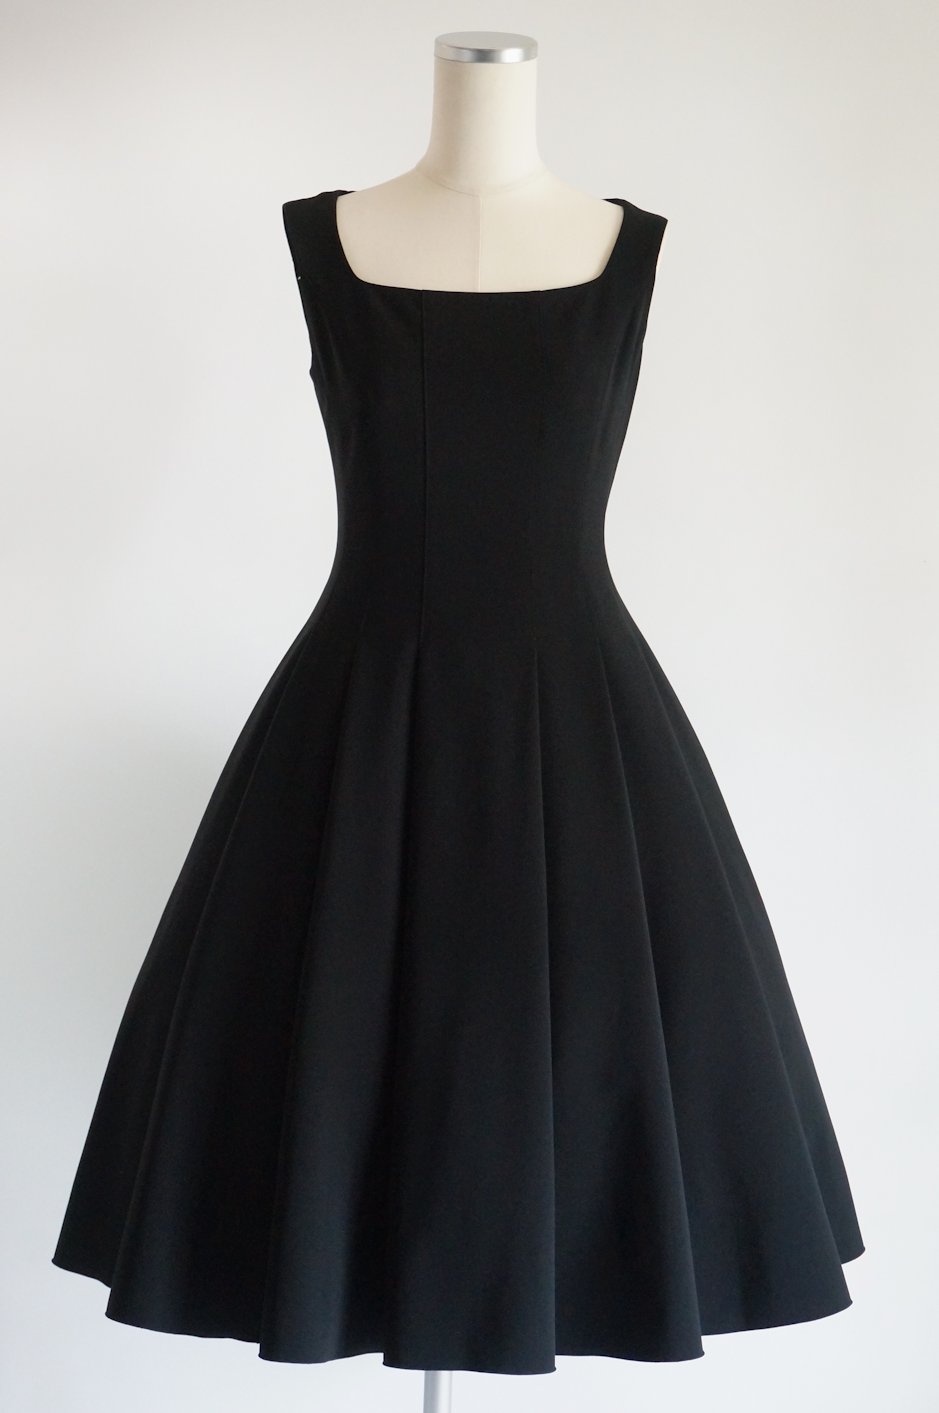 フォクシー フレアードレス42 / レンタルリトルブラックドレス テン Rental Little Black Dress ten.